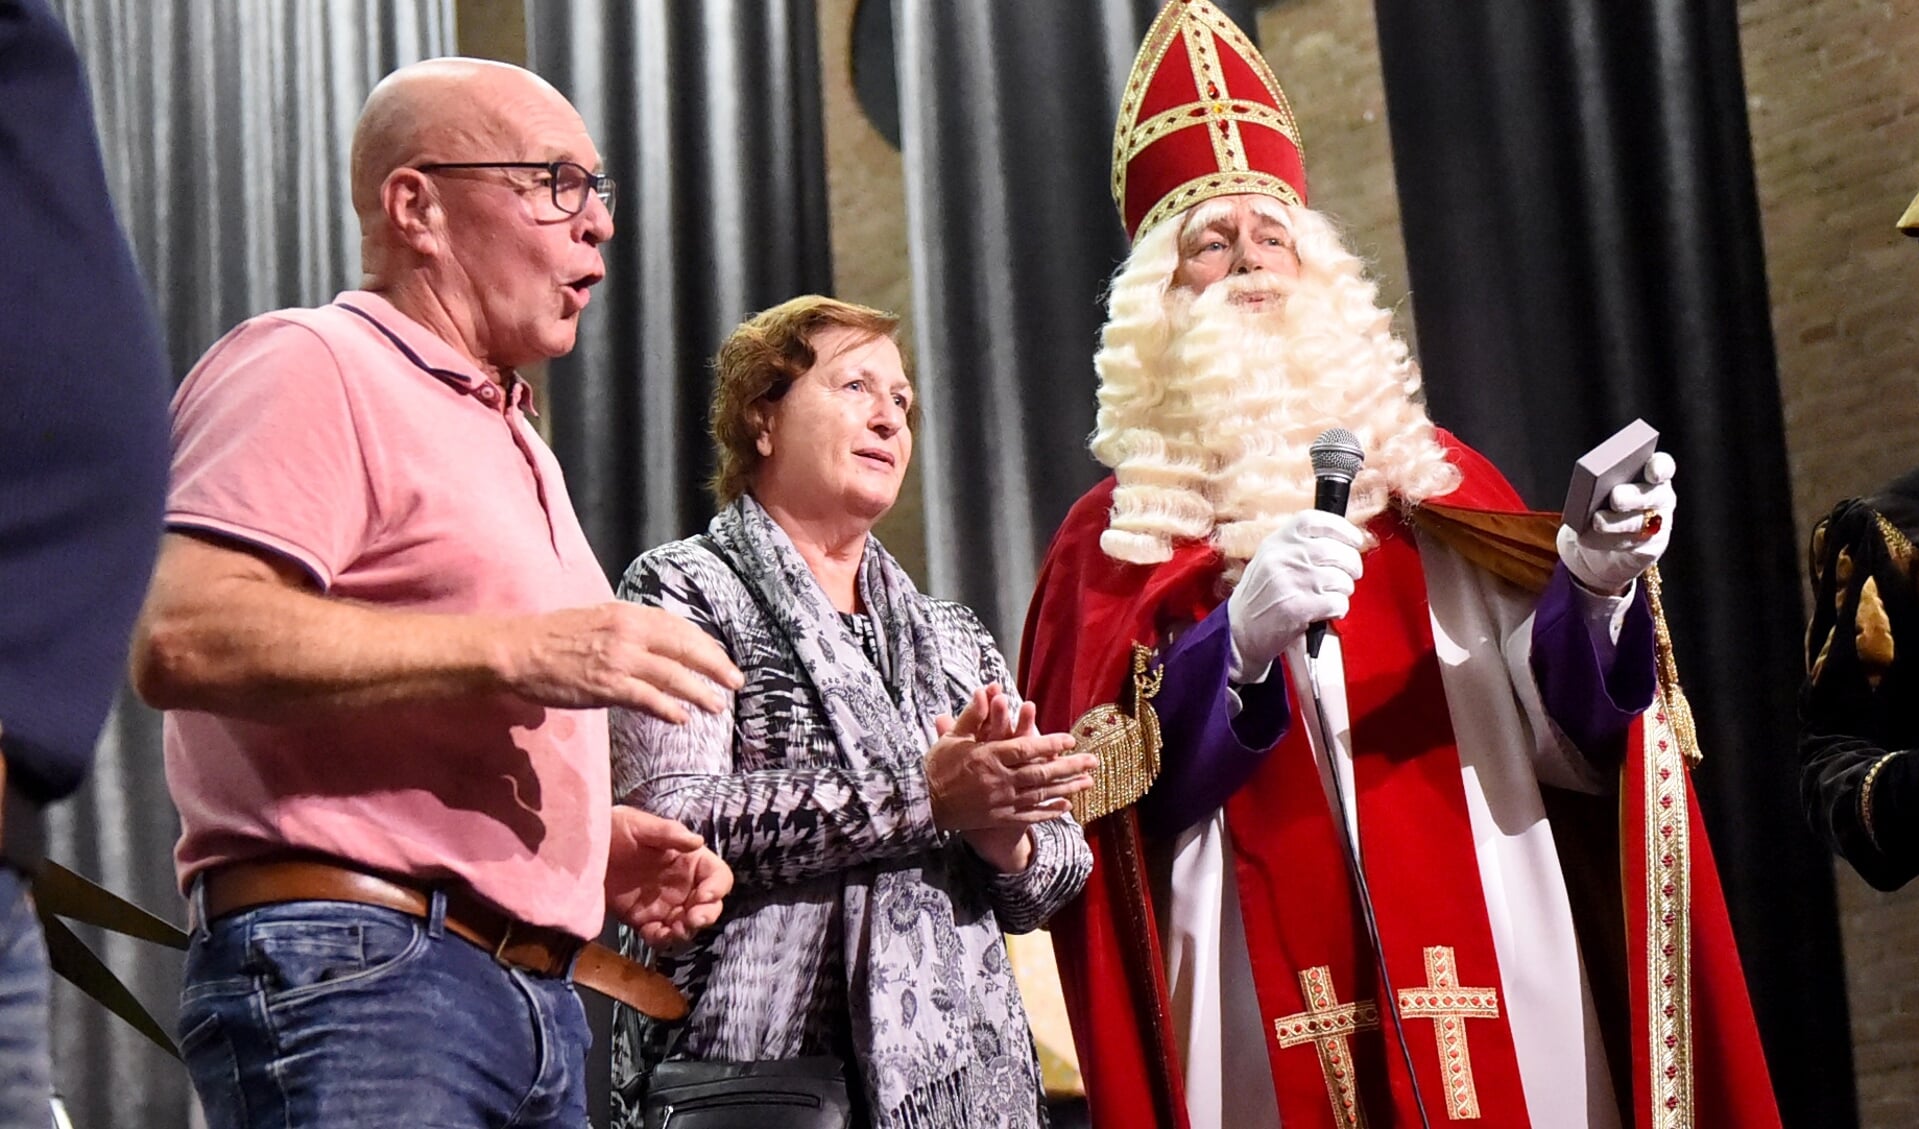 Sint reikt Orde van de Kindervriend uit aan Walburgen Beweegt. (foto: Sjaak Veldkamp/Groeten uit Gendt)